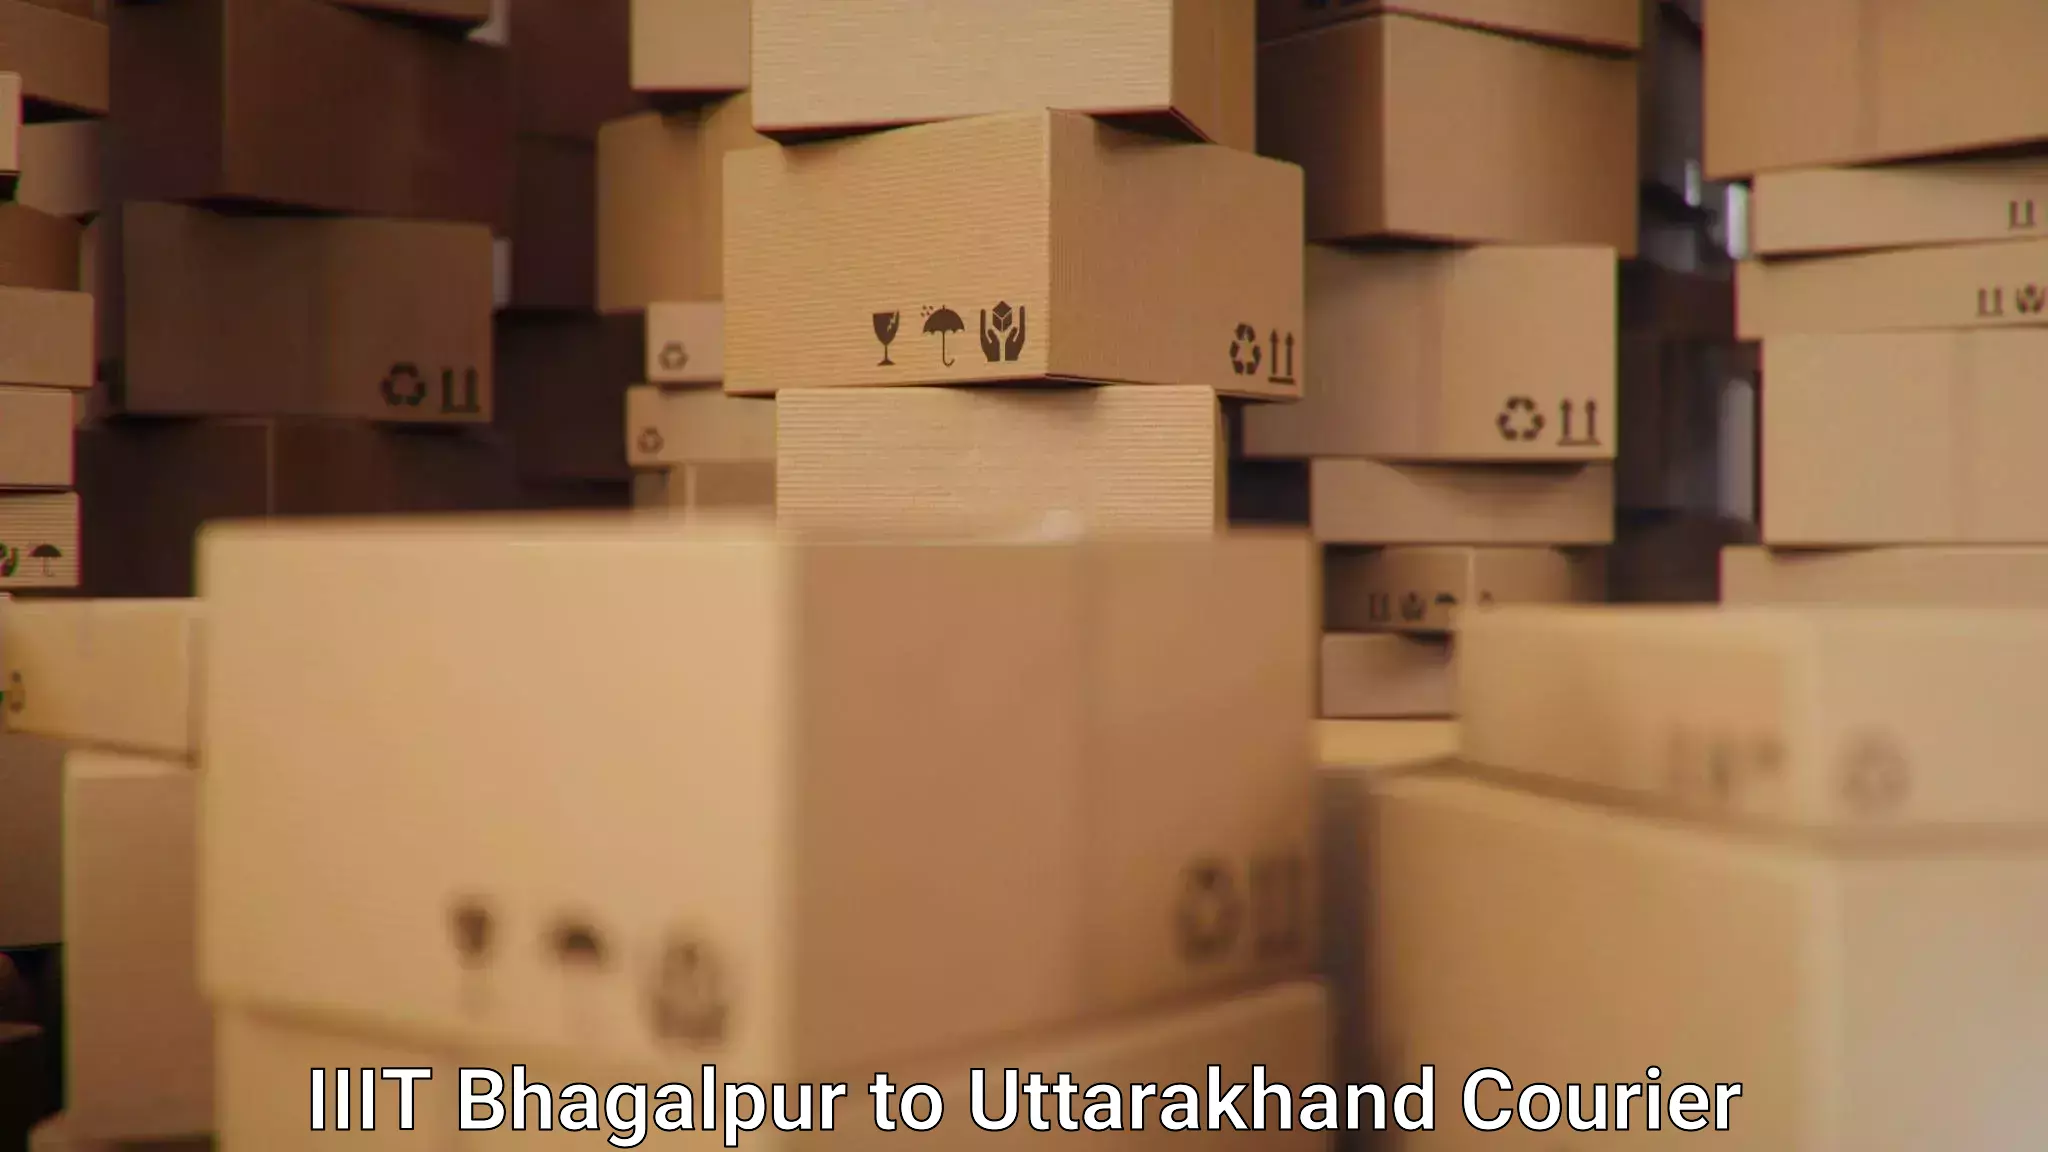 Overnight delivery services IIIT Bhagalpur to Uttarkashi